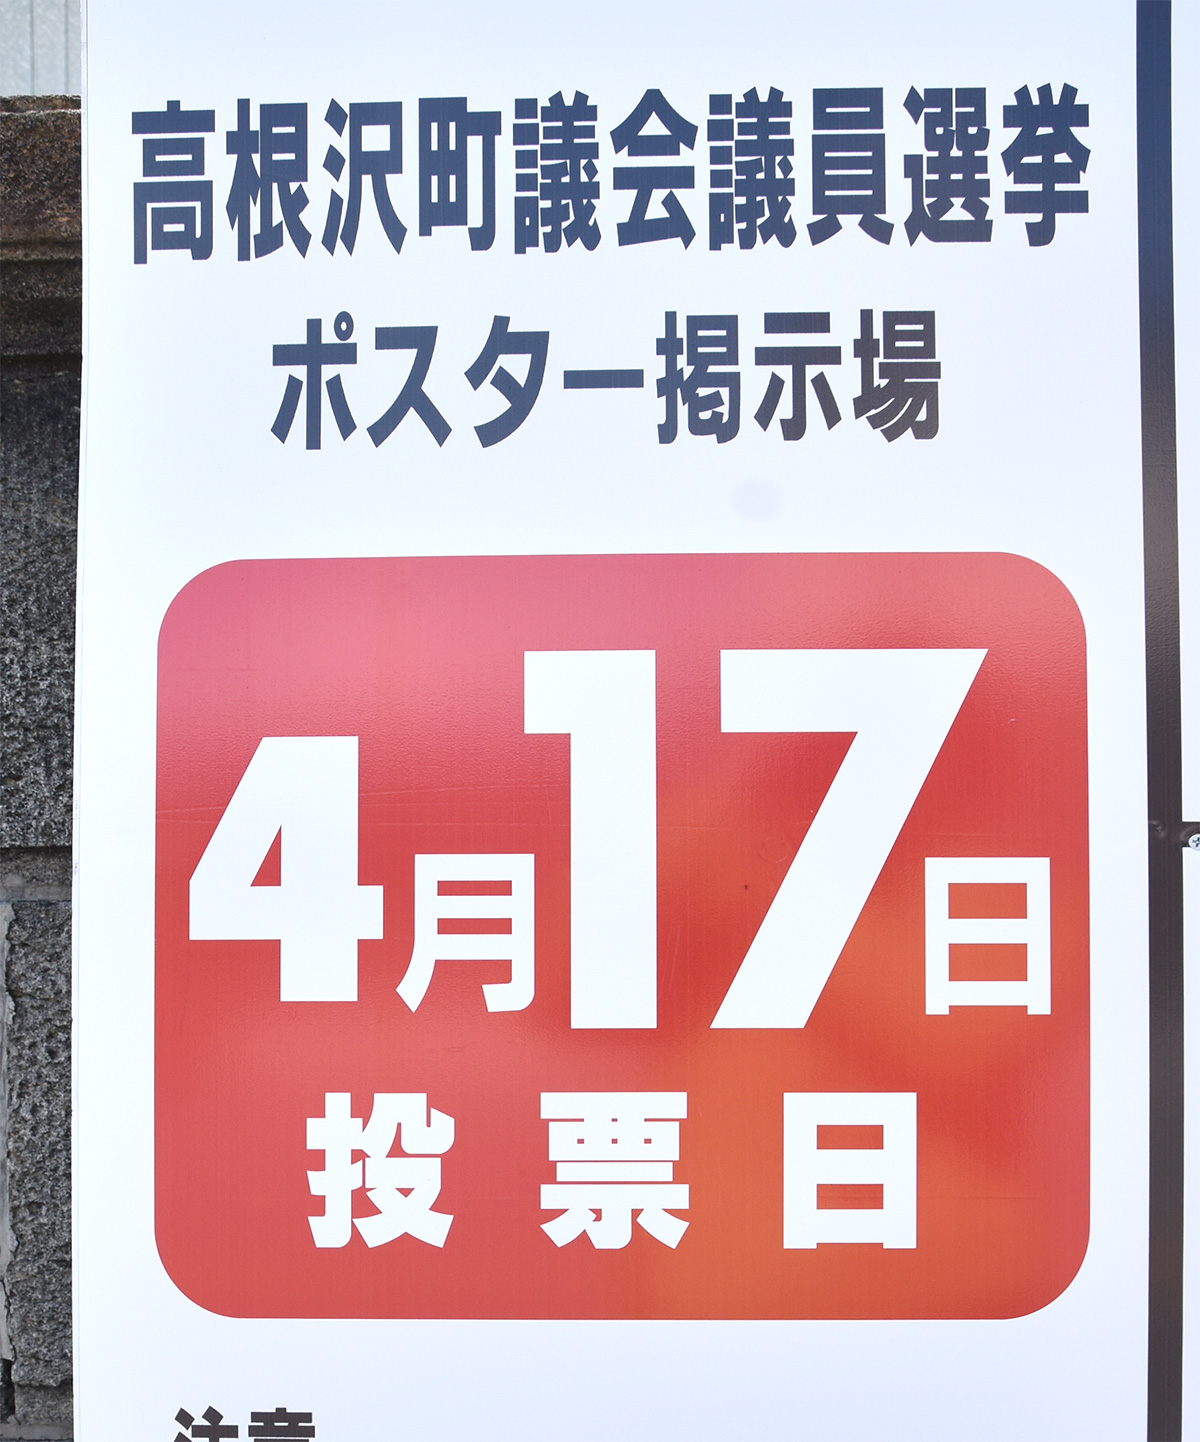 高根沢町議会議員選挙